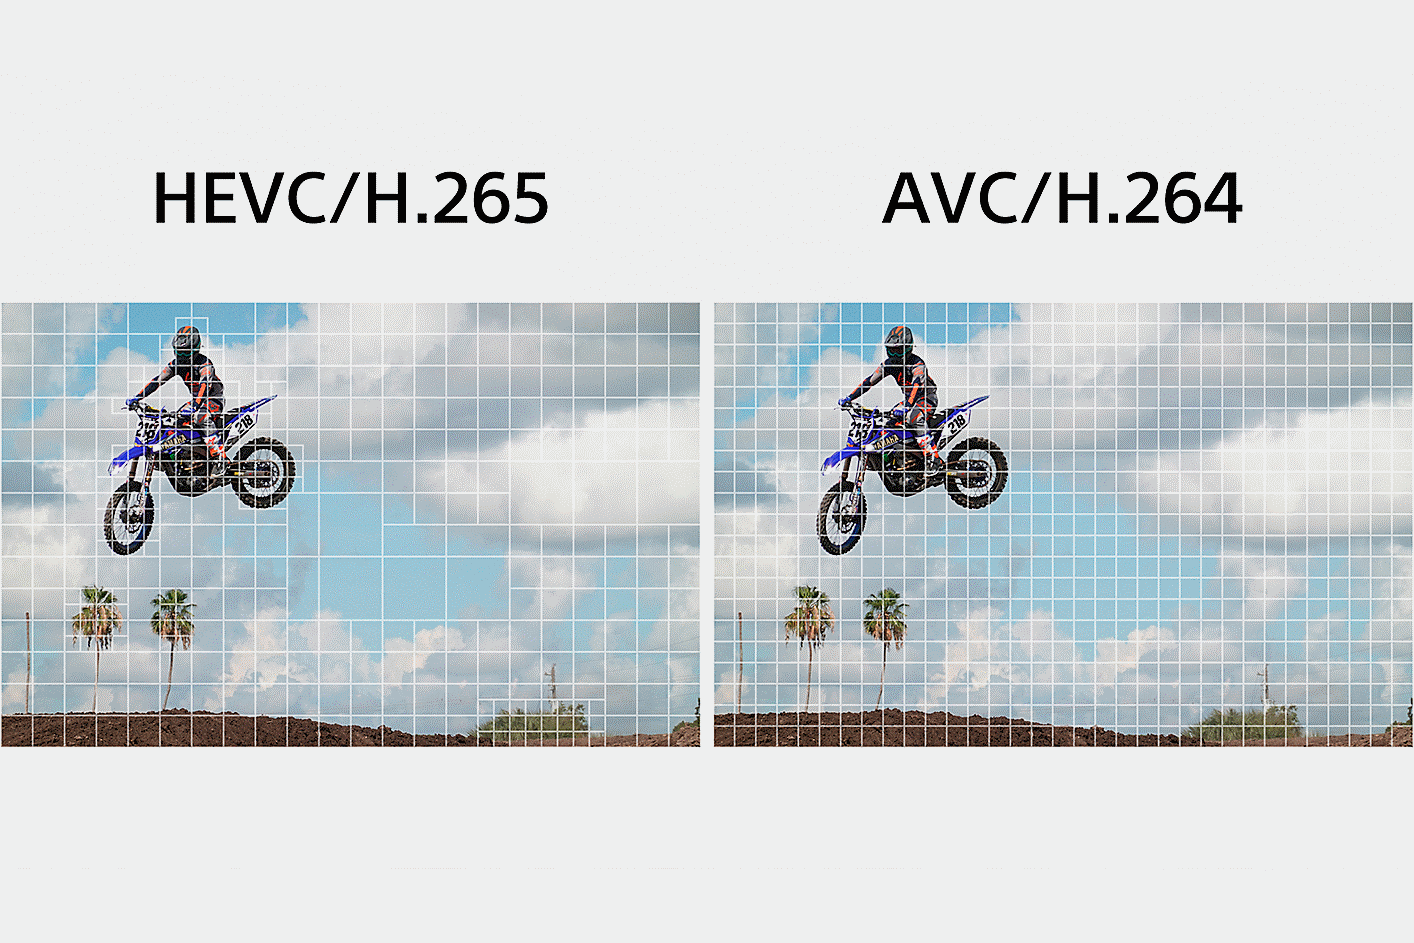 اليسار: رسم توضيحي لمقياس HEVC/H.265، يقسم جزءًا معقدًا من الفيلم إلى مقاطع أصغر لمعالجة البيانات؛ اليمين: رسم توضيحي لترميز AVC/H.264، يقسم بالتساوي صور كل الفيديو لمعالجة البيانات